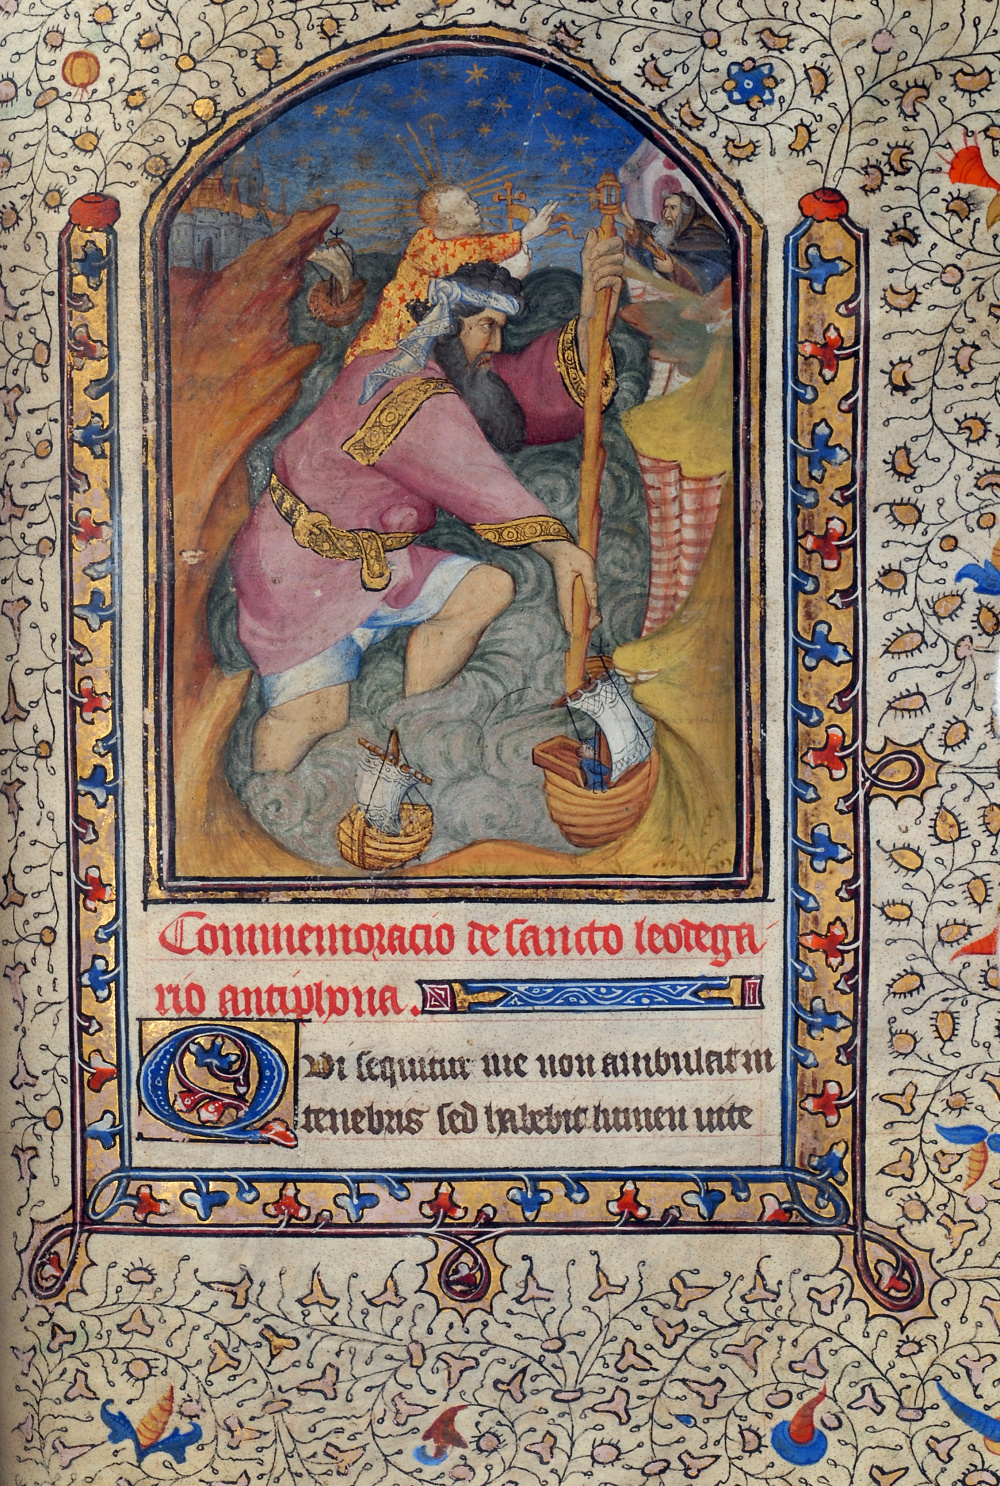 Heures à l'usage de Rome (15e siècle) : Saint Christophe. © Bibliothèque publique et universitaire de Valence.